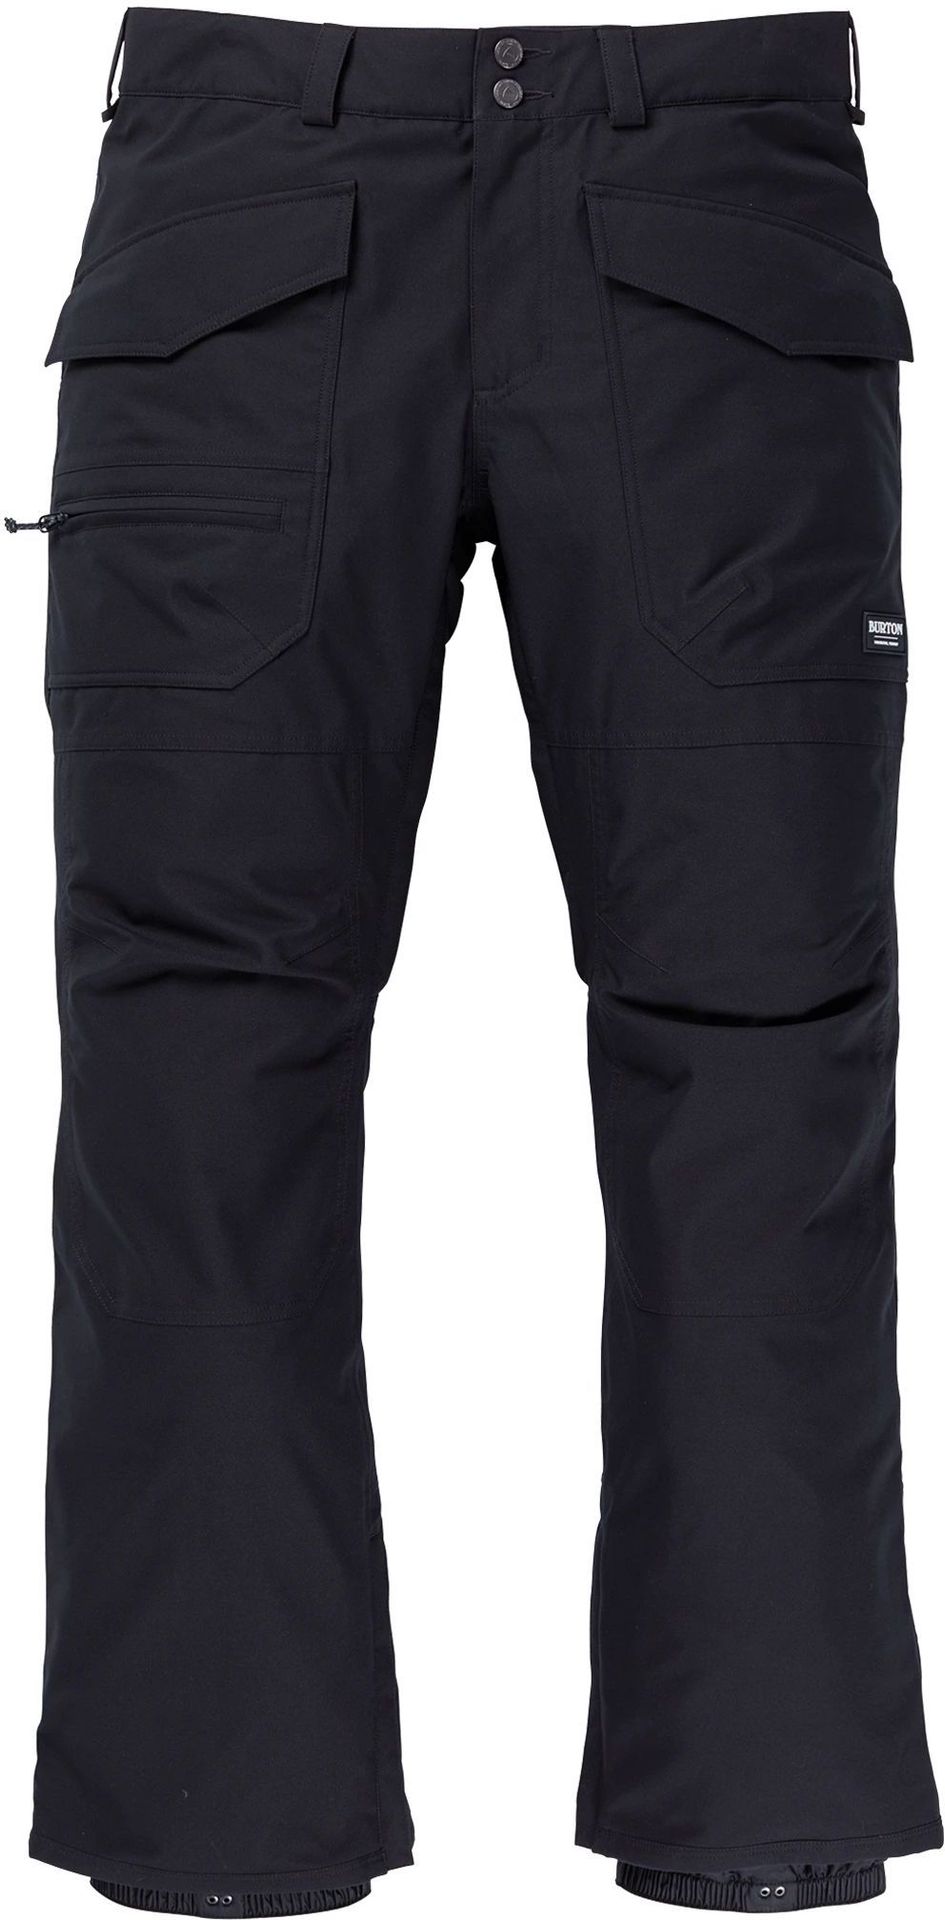 zimowe spodnie męskie BURTON SOUTHSIDE PANT (SLIM FIT) True Black + transport bezpłatny